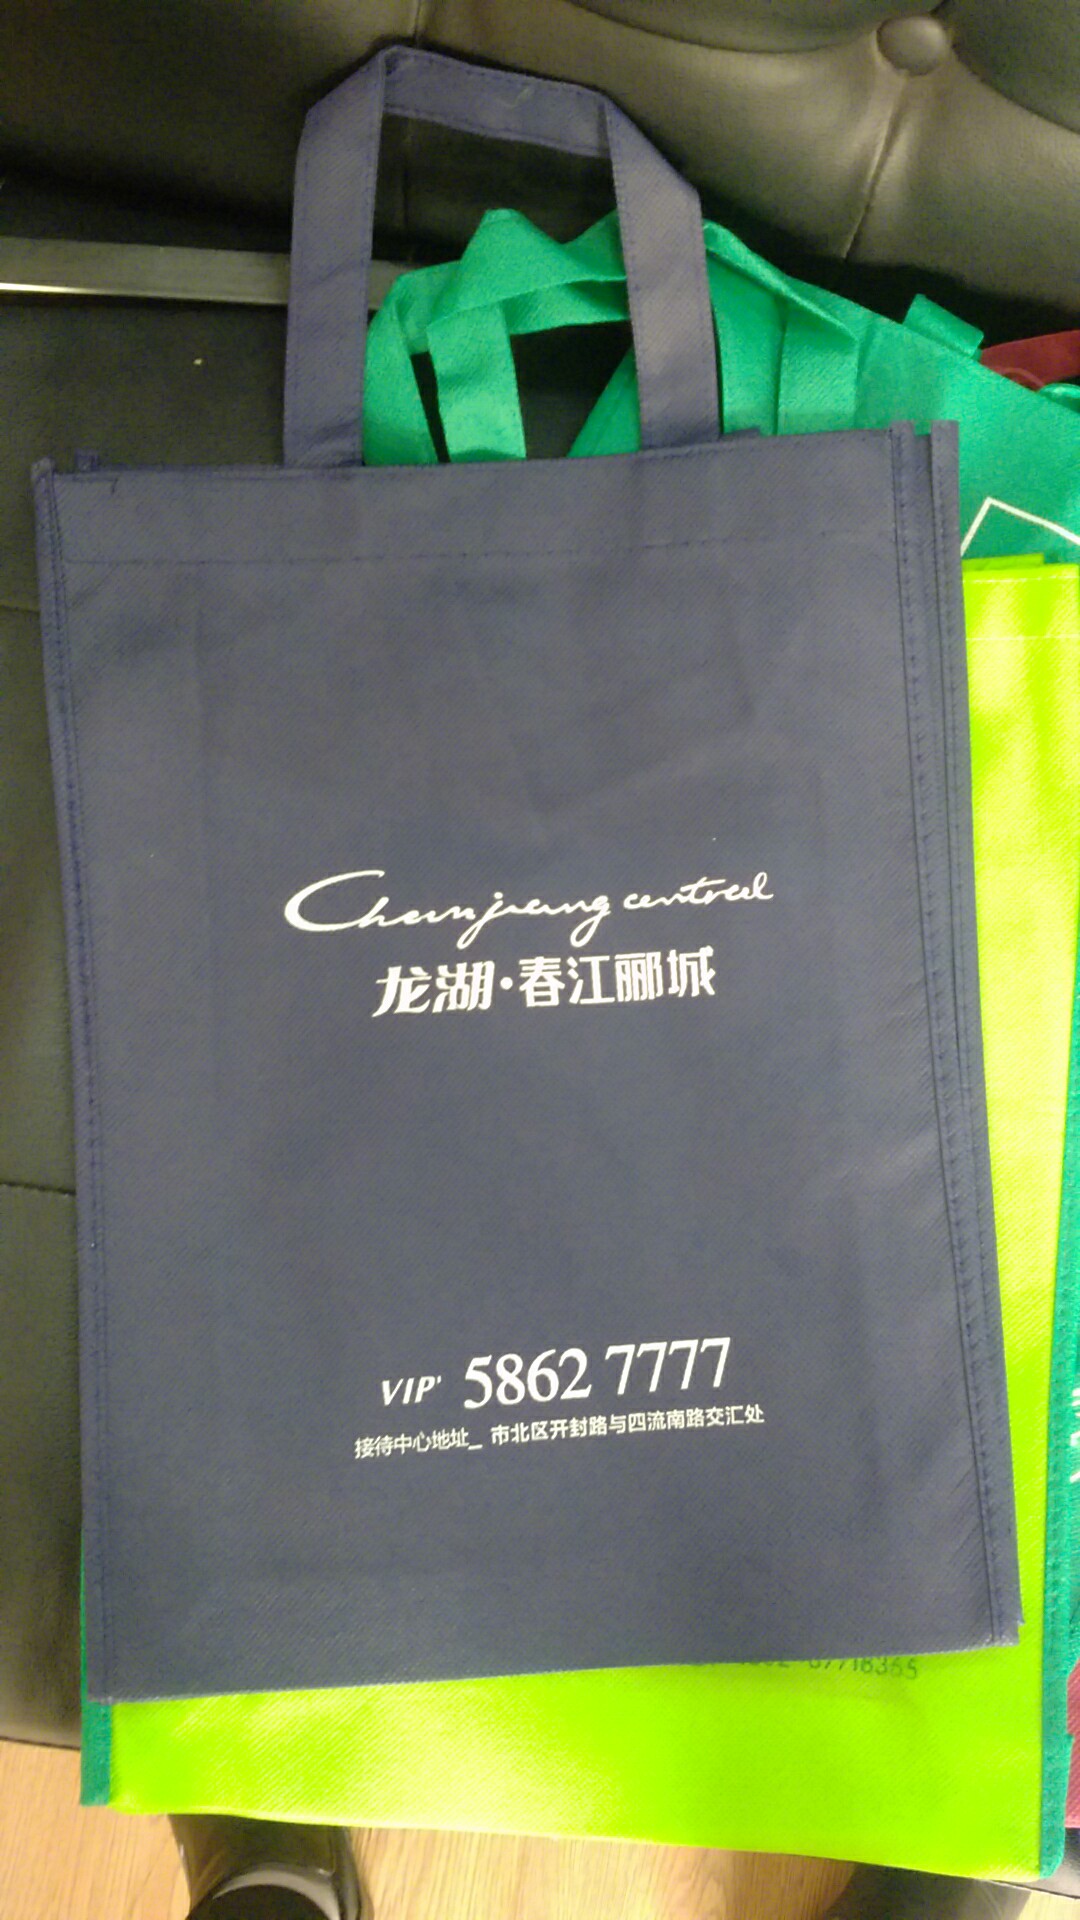 专业加工符合国家标准的无纺布袋手提袋广告袋